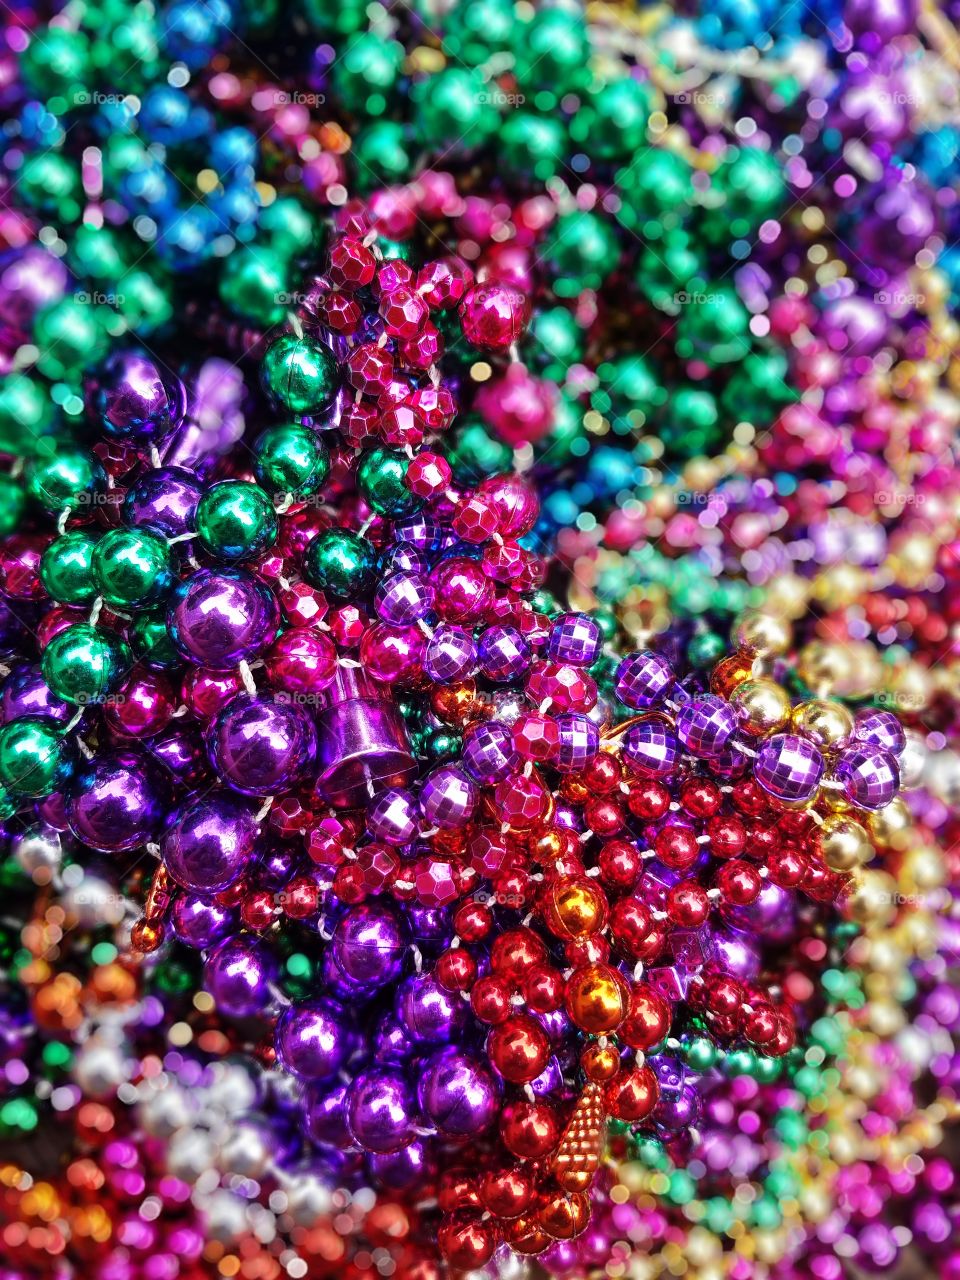 mardi-gras beads